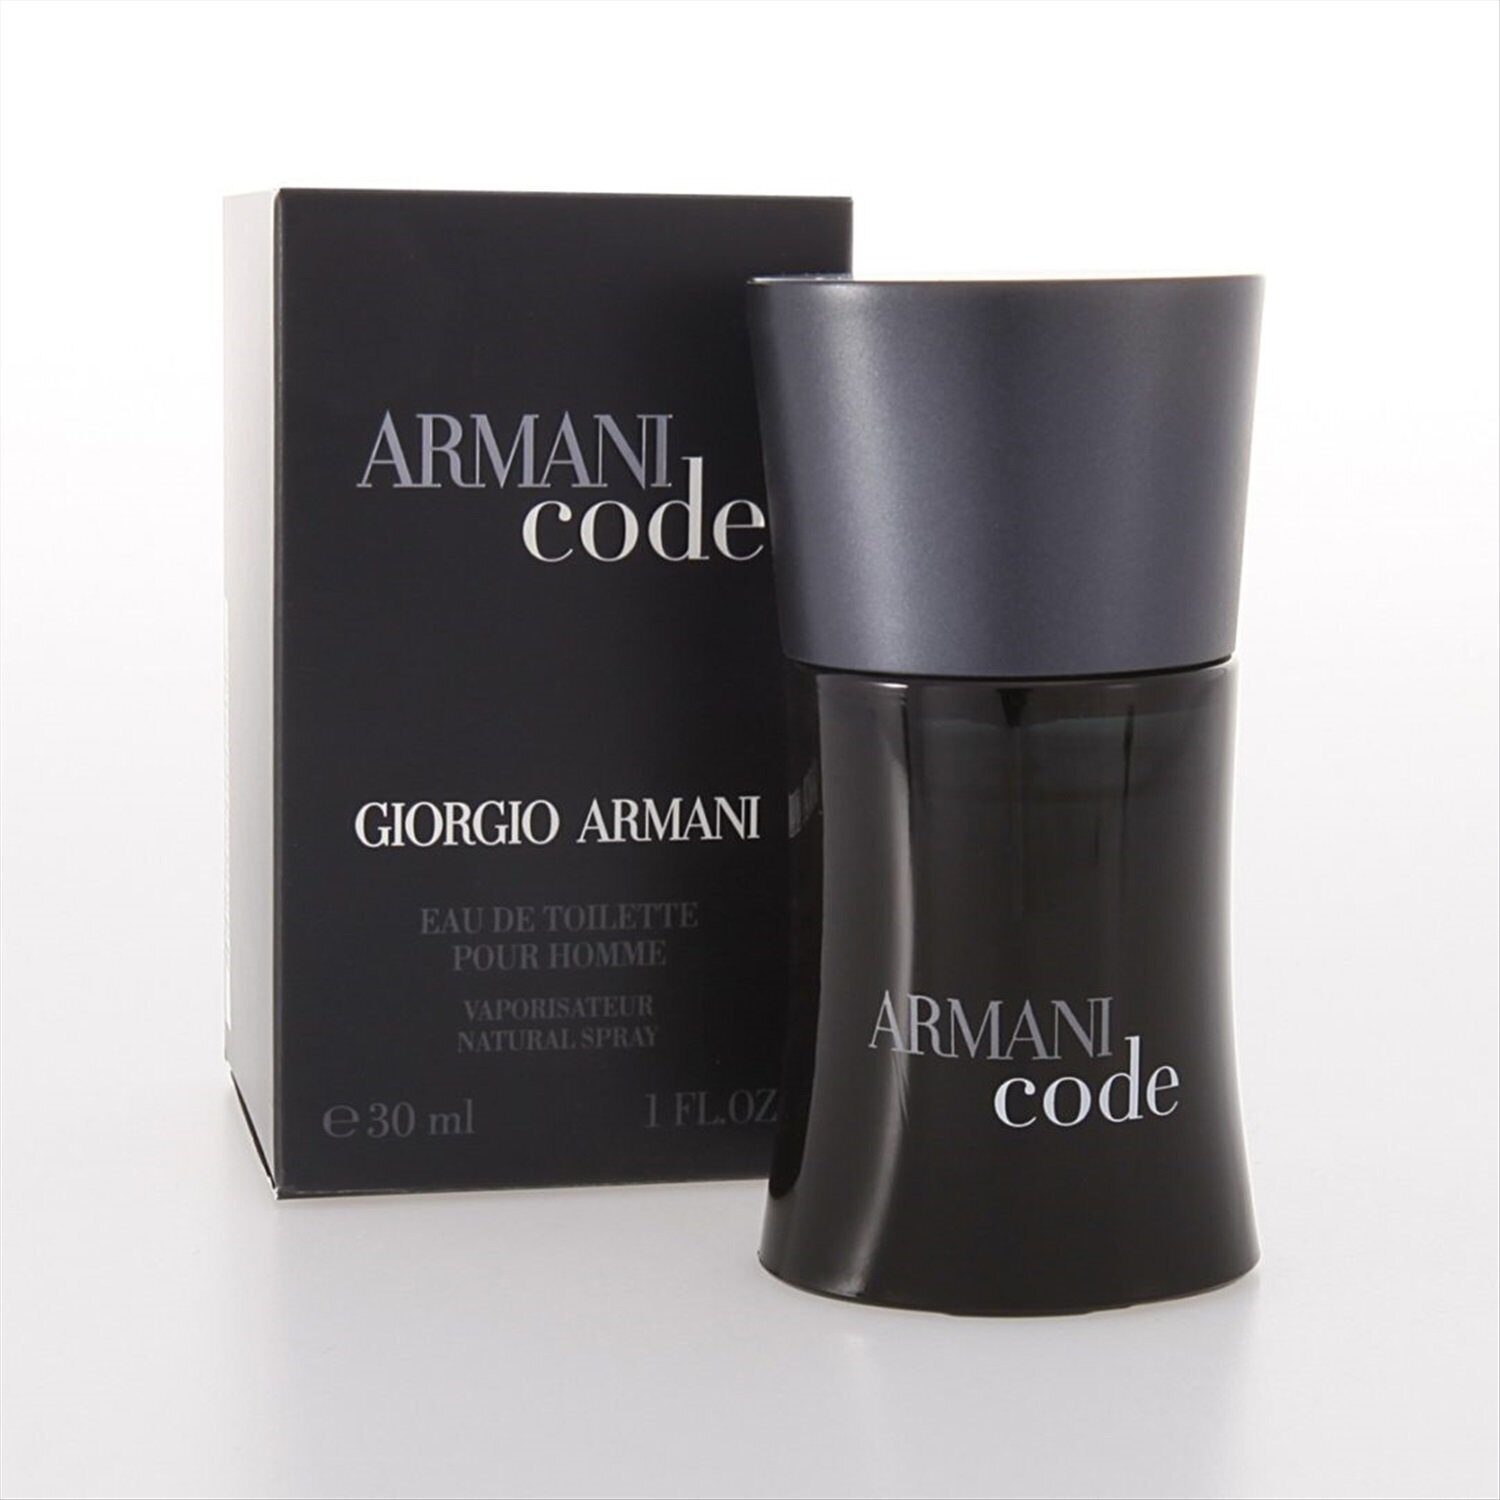 Code homme. Armani code (m) 30ml EDT. Armani Black code Giorgio Armani. Giorgio Armani туалетная вода Armani code homme. Giorgio Armani Armani code Eau de Toilette.